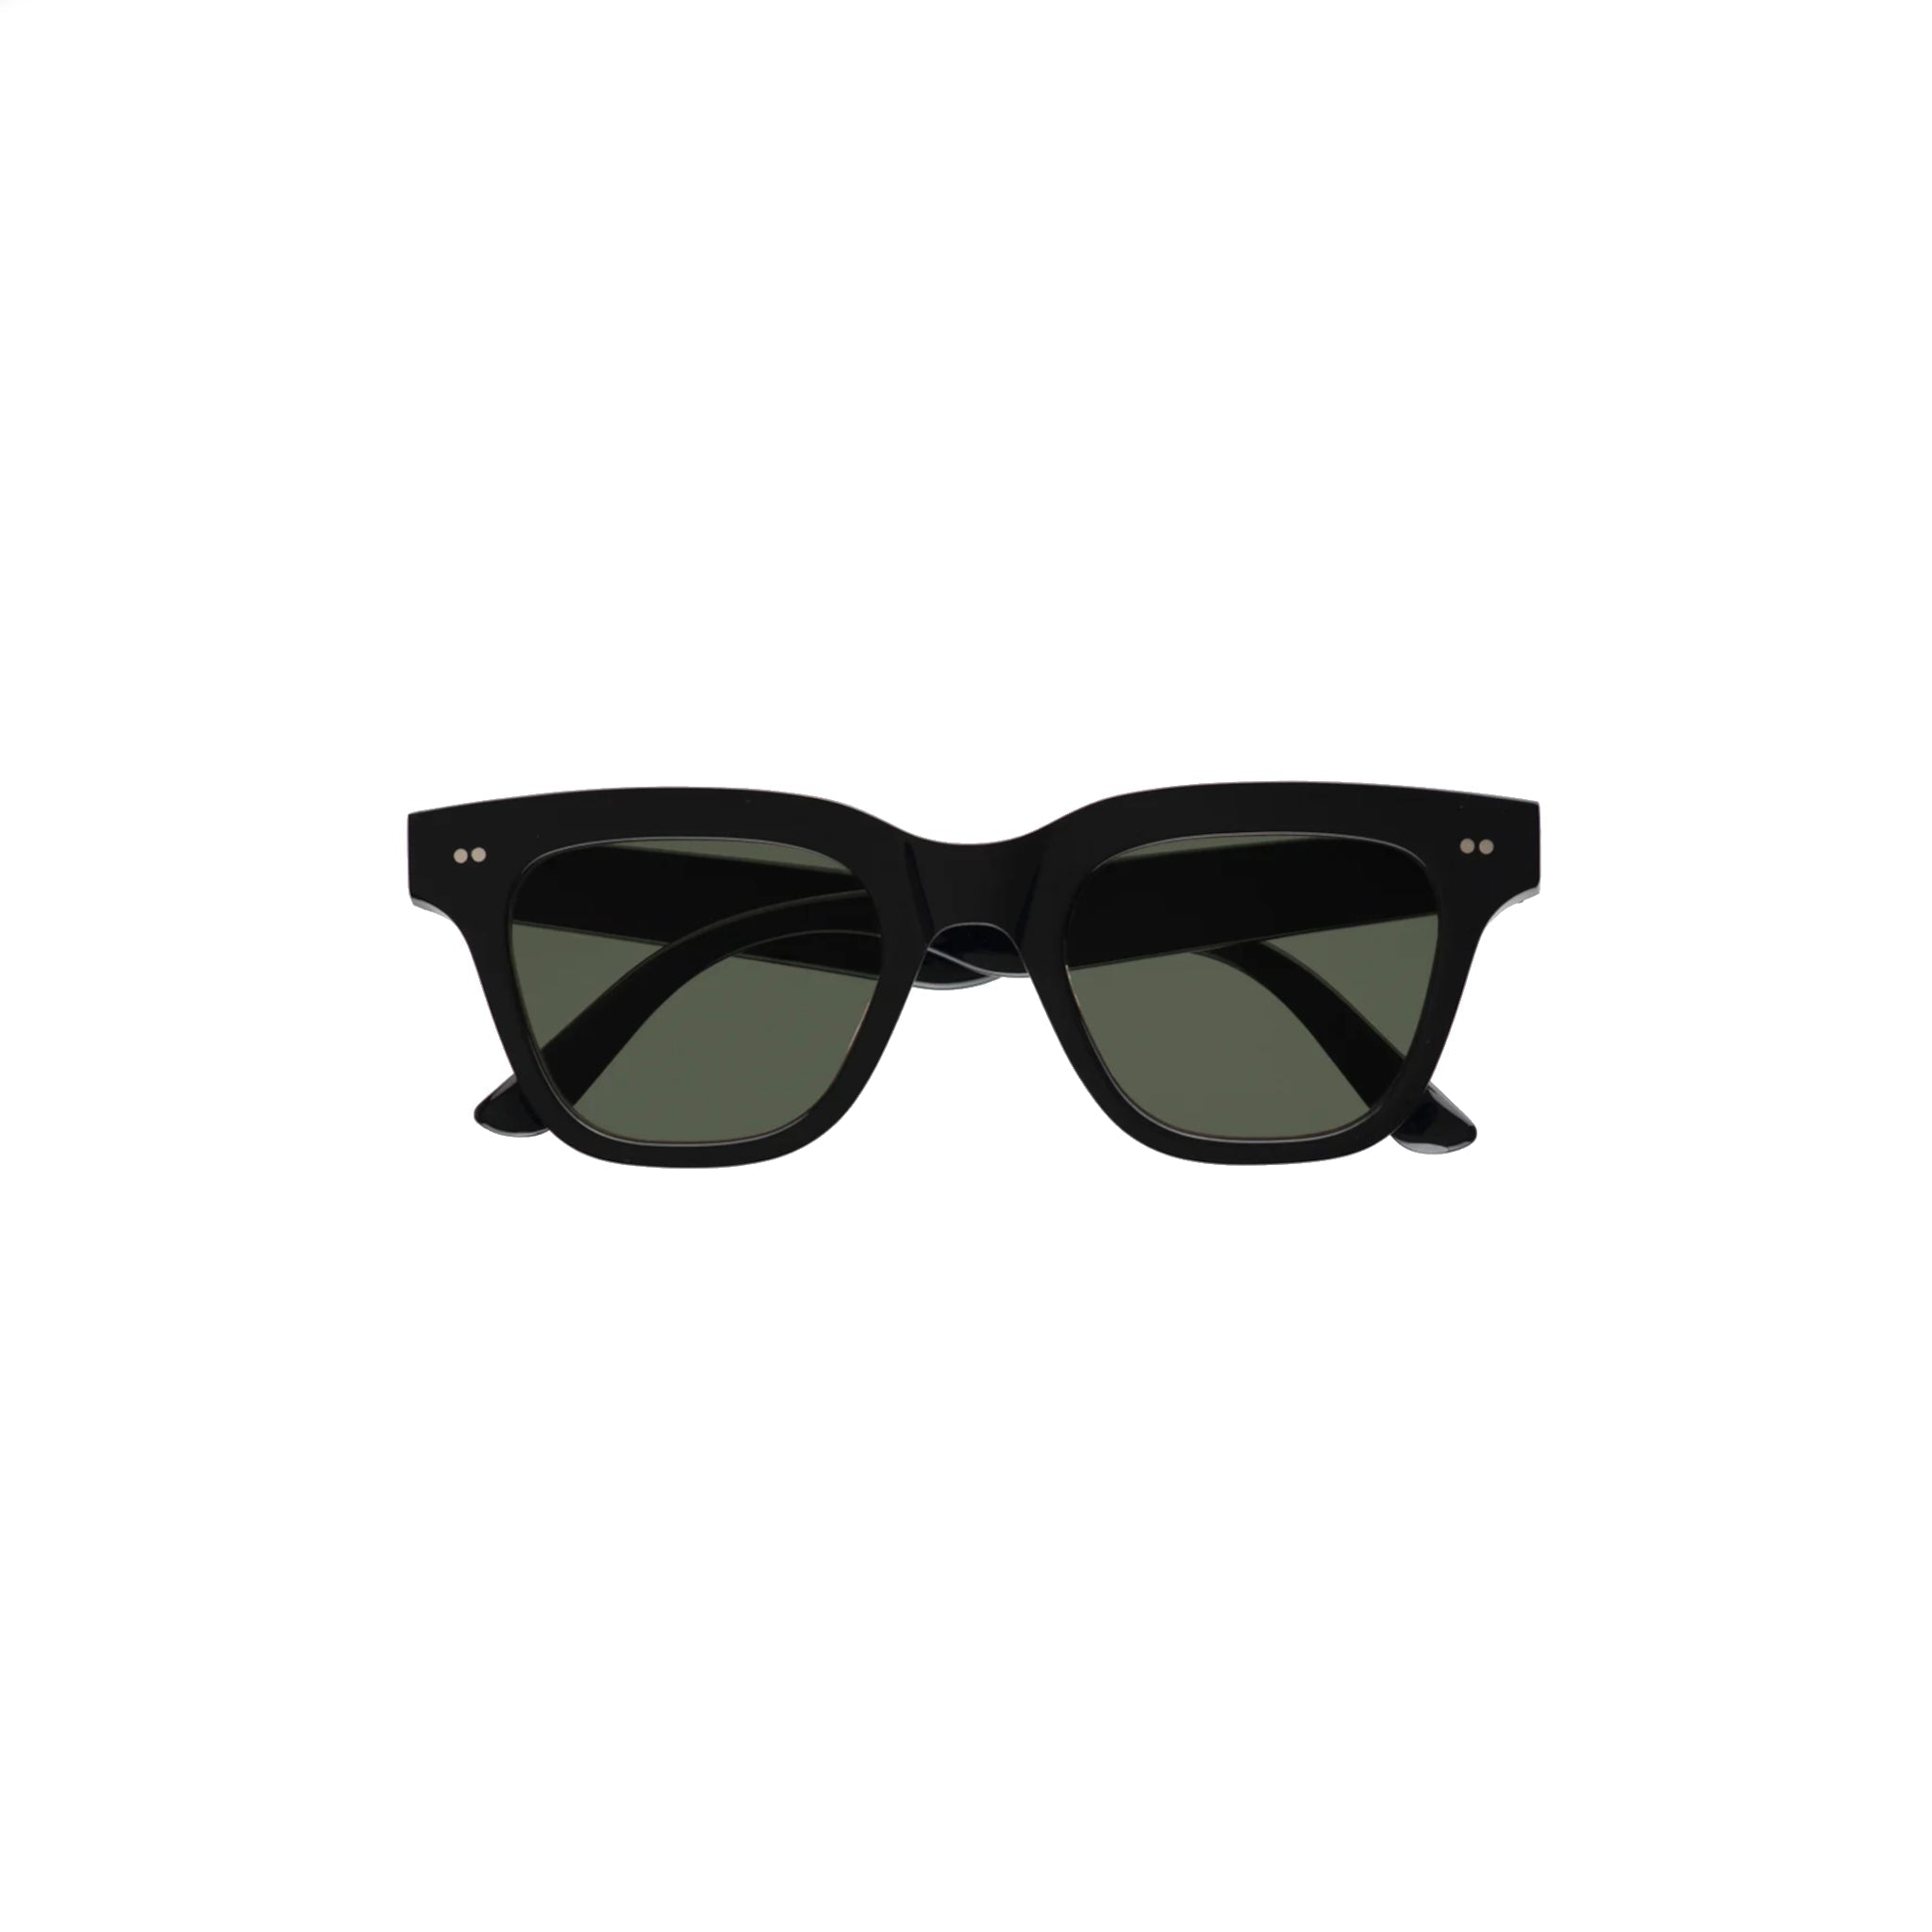 Ellis Sunglasses - Black-Monokel-W2 Store